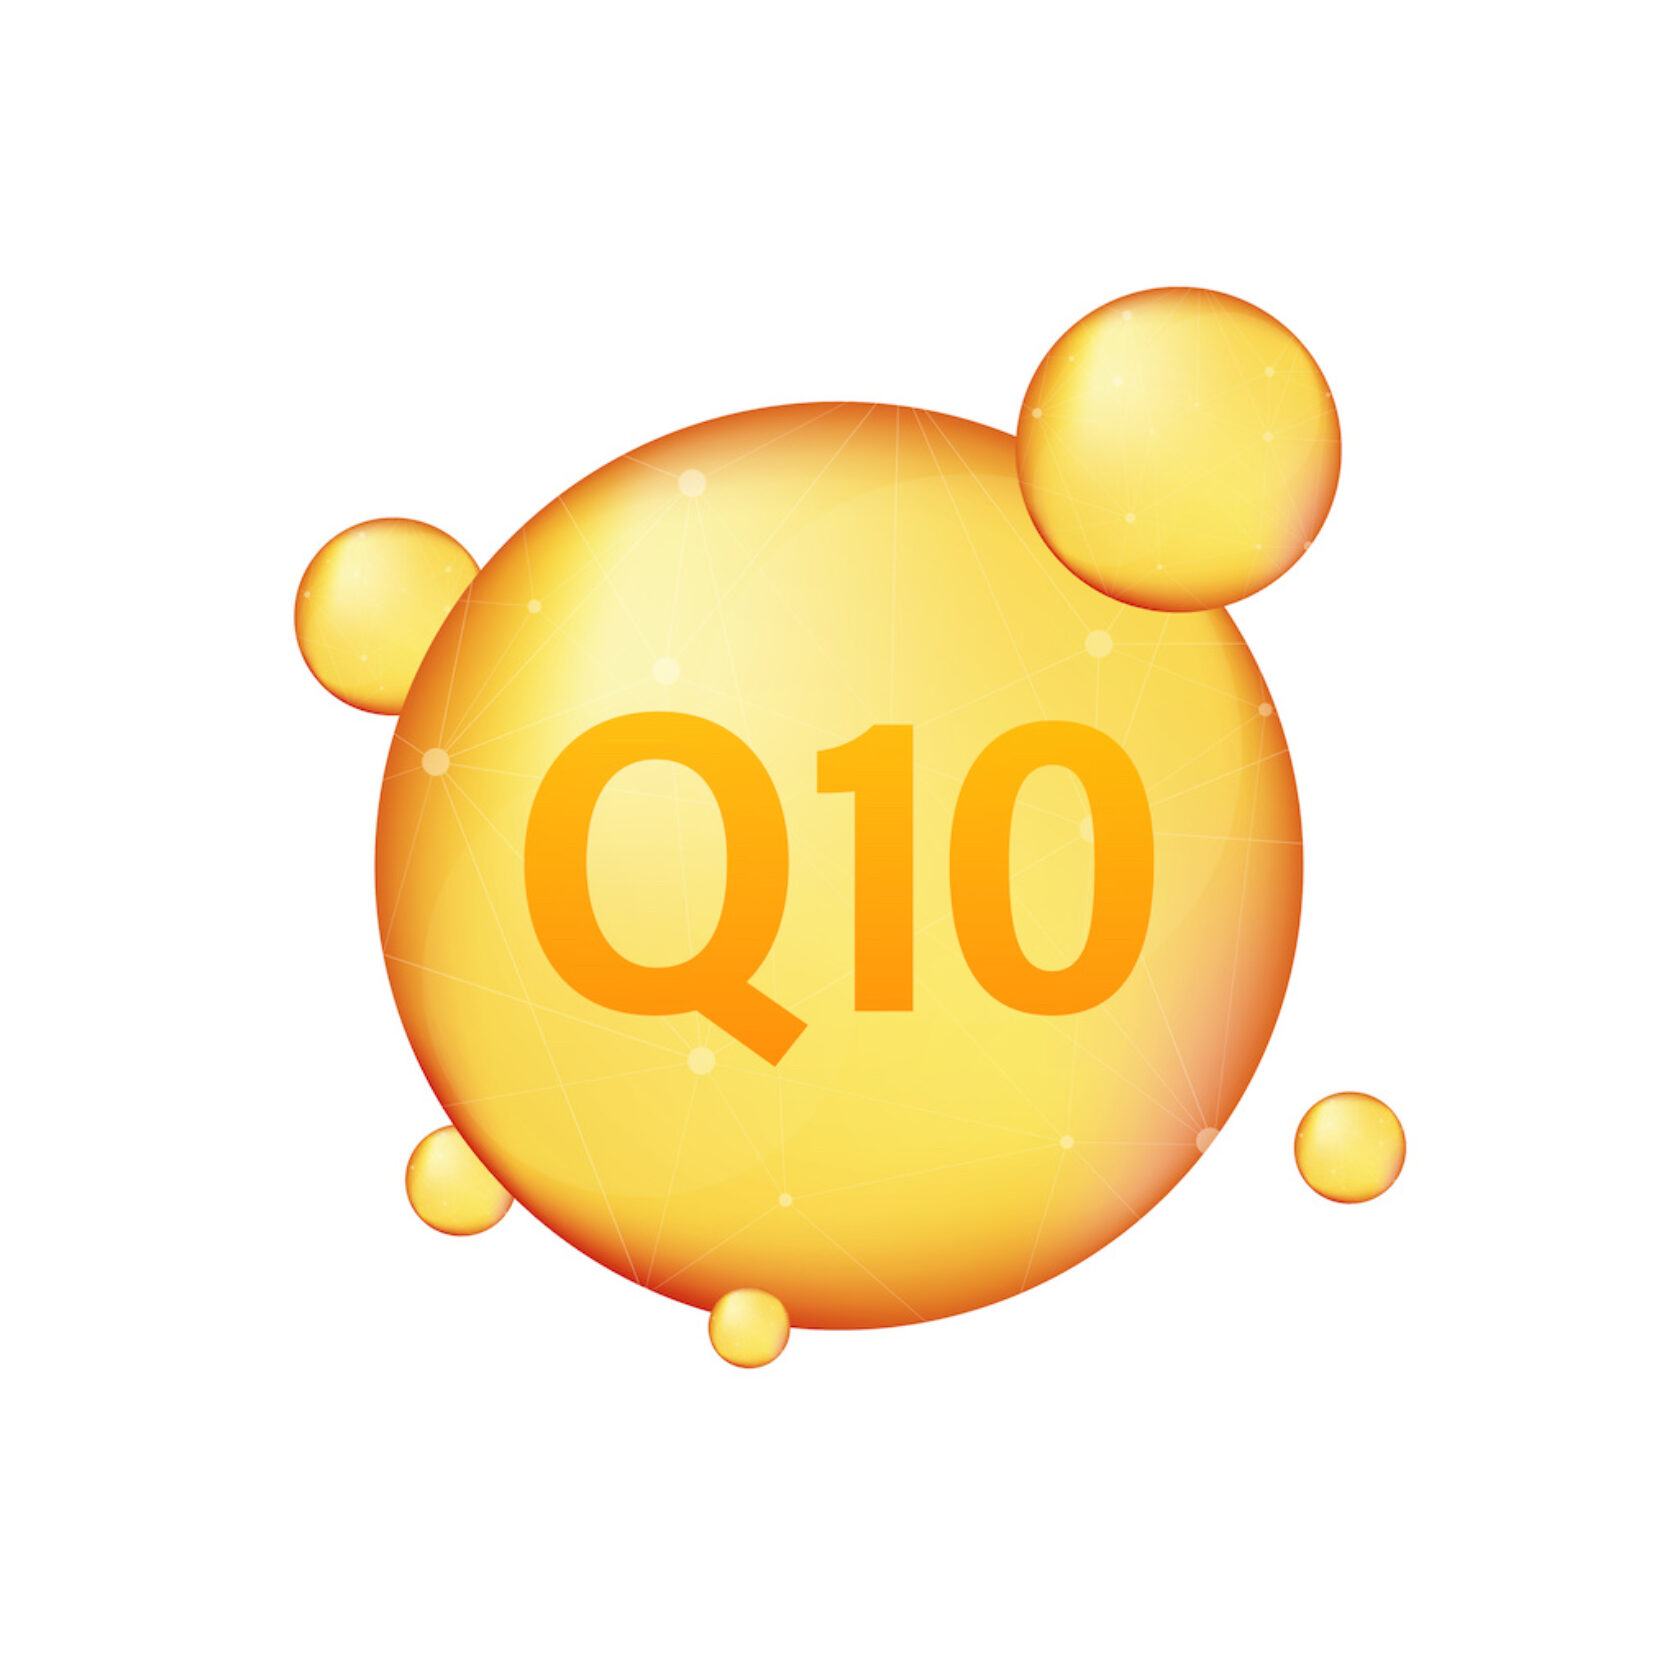 gelb-orangefarbene schematische Darstellung von Q10